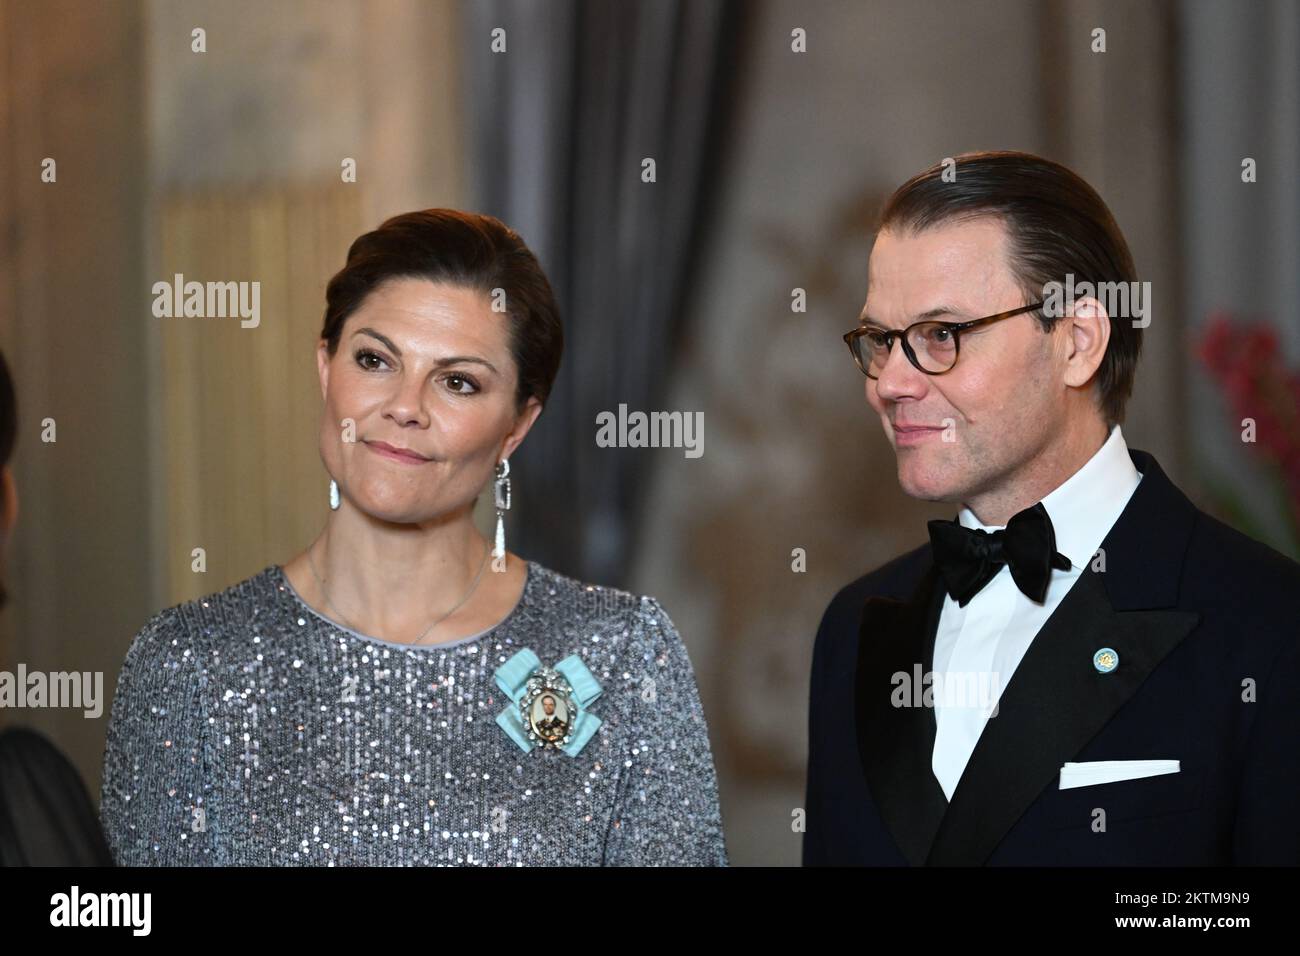 La Principessa Corona Victoria e il principe Daniele di Svezia accolgono i membri del Parlamento svedese durante una cena al Palazzo reale di Stoccolma, Svezia Foto Stock